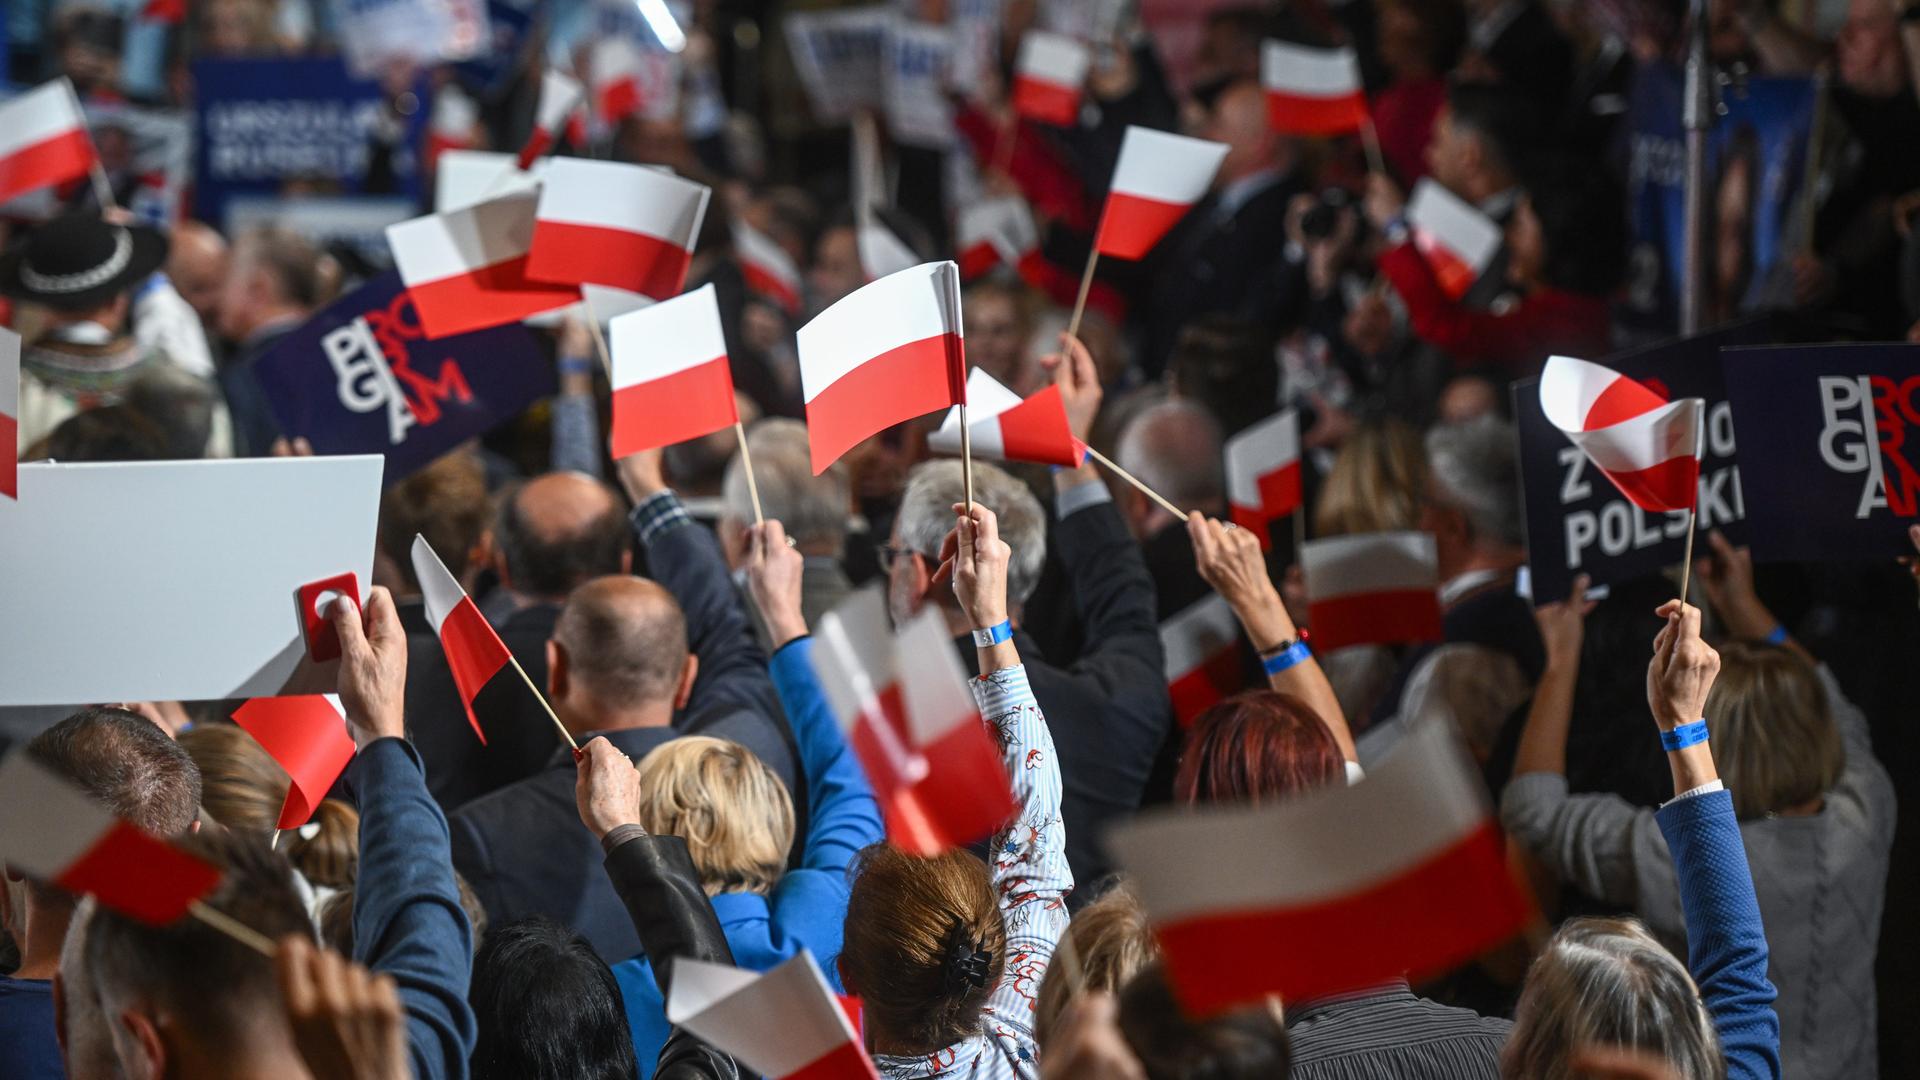 Anhänger der amtierenden PiS-Partei schwenken rot-weiße polnische Fahnen.